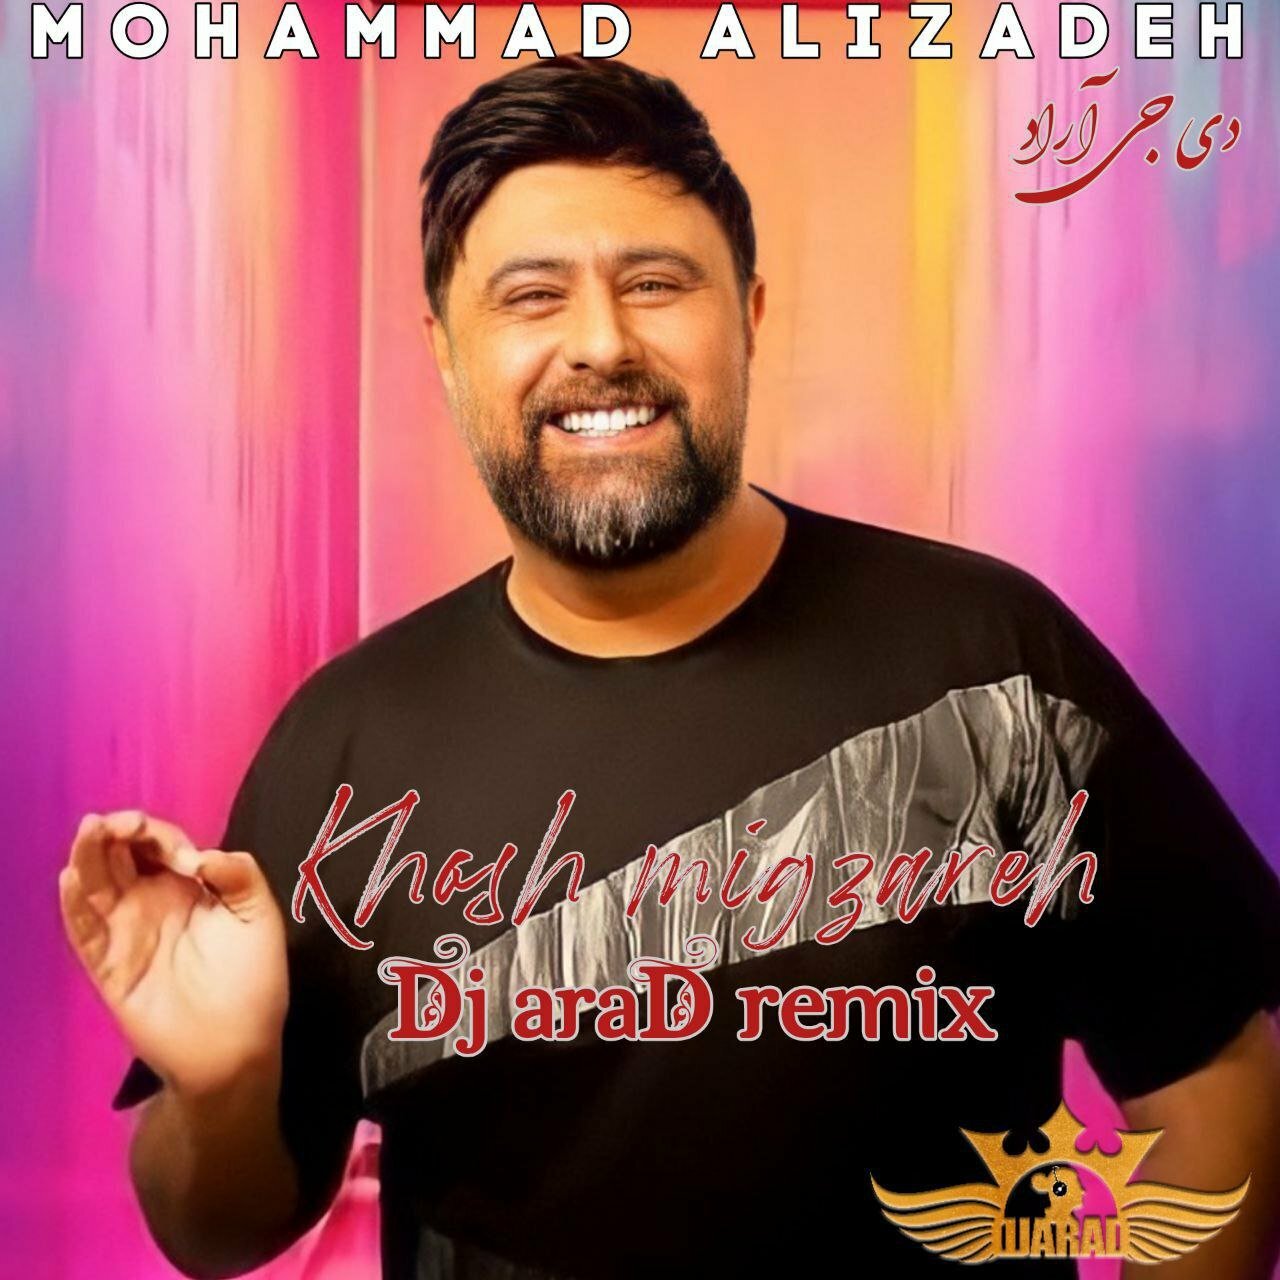 دانلود آهنگ جدید محمد علیزاده با عنوان خوش میگذره (ریمیکس دی جی آراد)